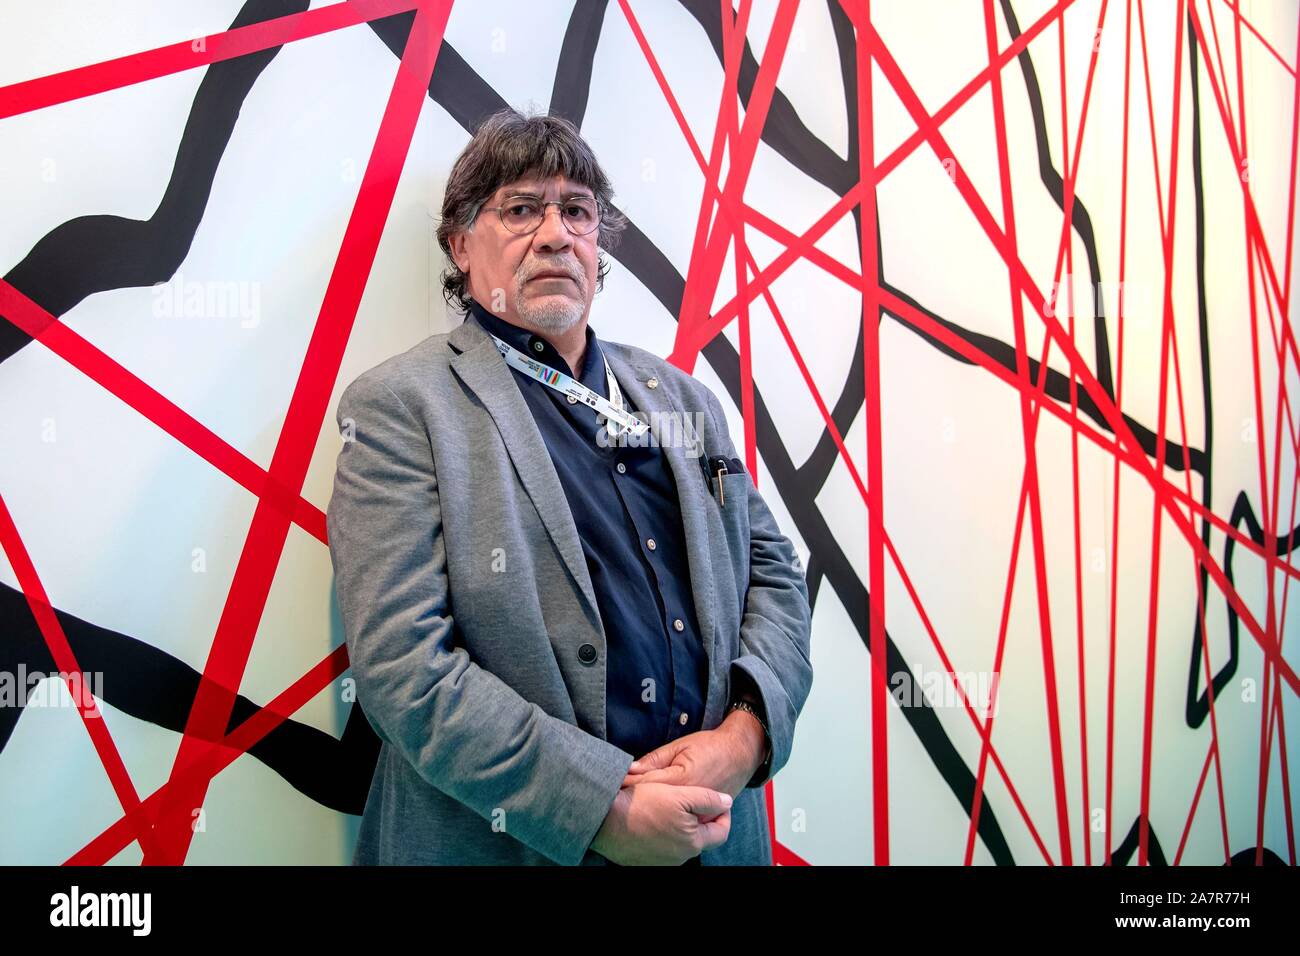 Chilean writer, film director, journalist and political activist Luis Sepúlveda at Salone internazionale del Libro di Torino 2019 - Turin Internationa Stock Photo